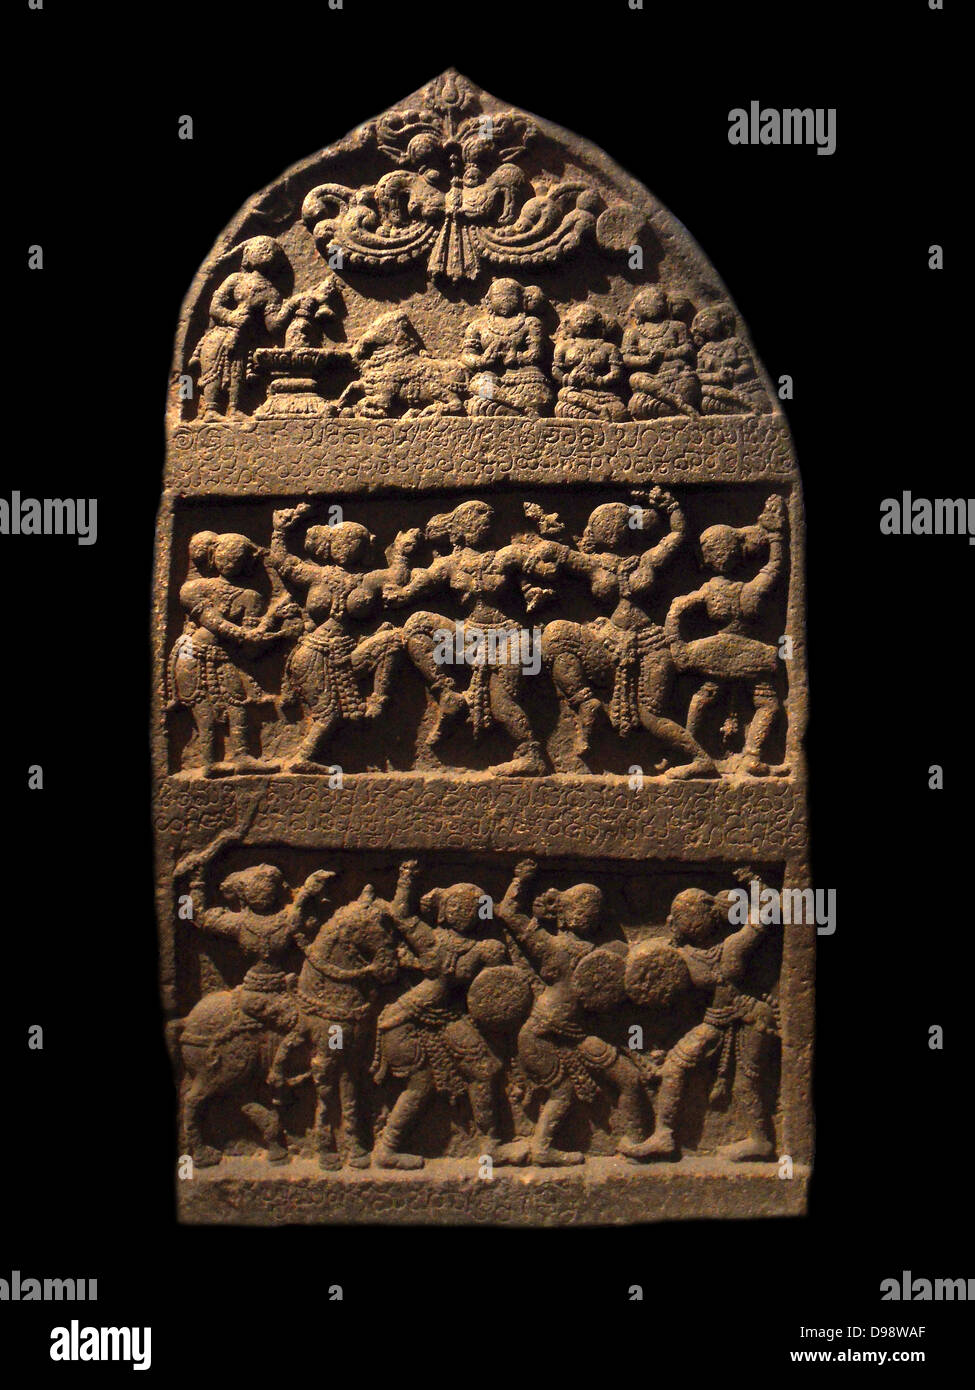 Stèle commémorative ('Stone of Heroes'). 14e siècle, 15e siècle, la dynastie Vijayanagara (15ème-16ème siècle) sculpture de basalte de l'Inde, Karnataka Banque D'Images